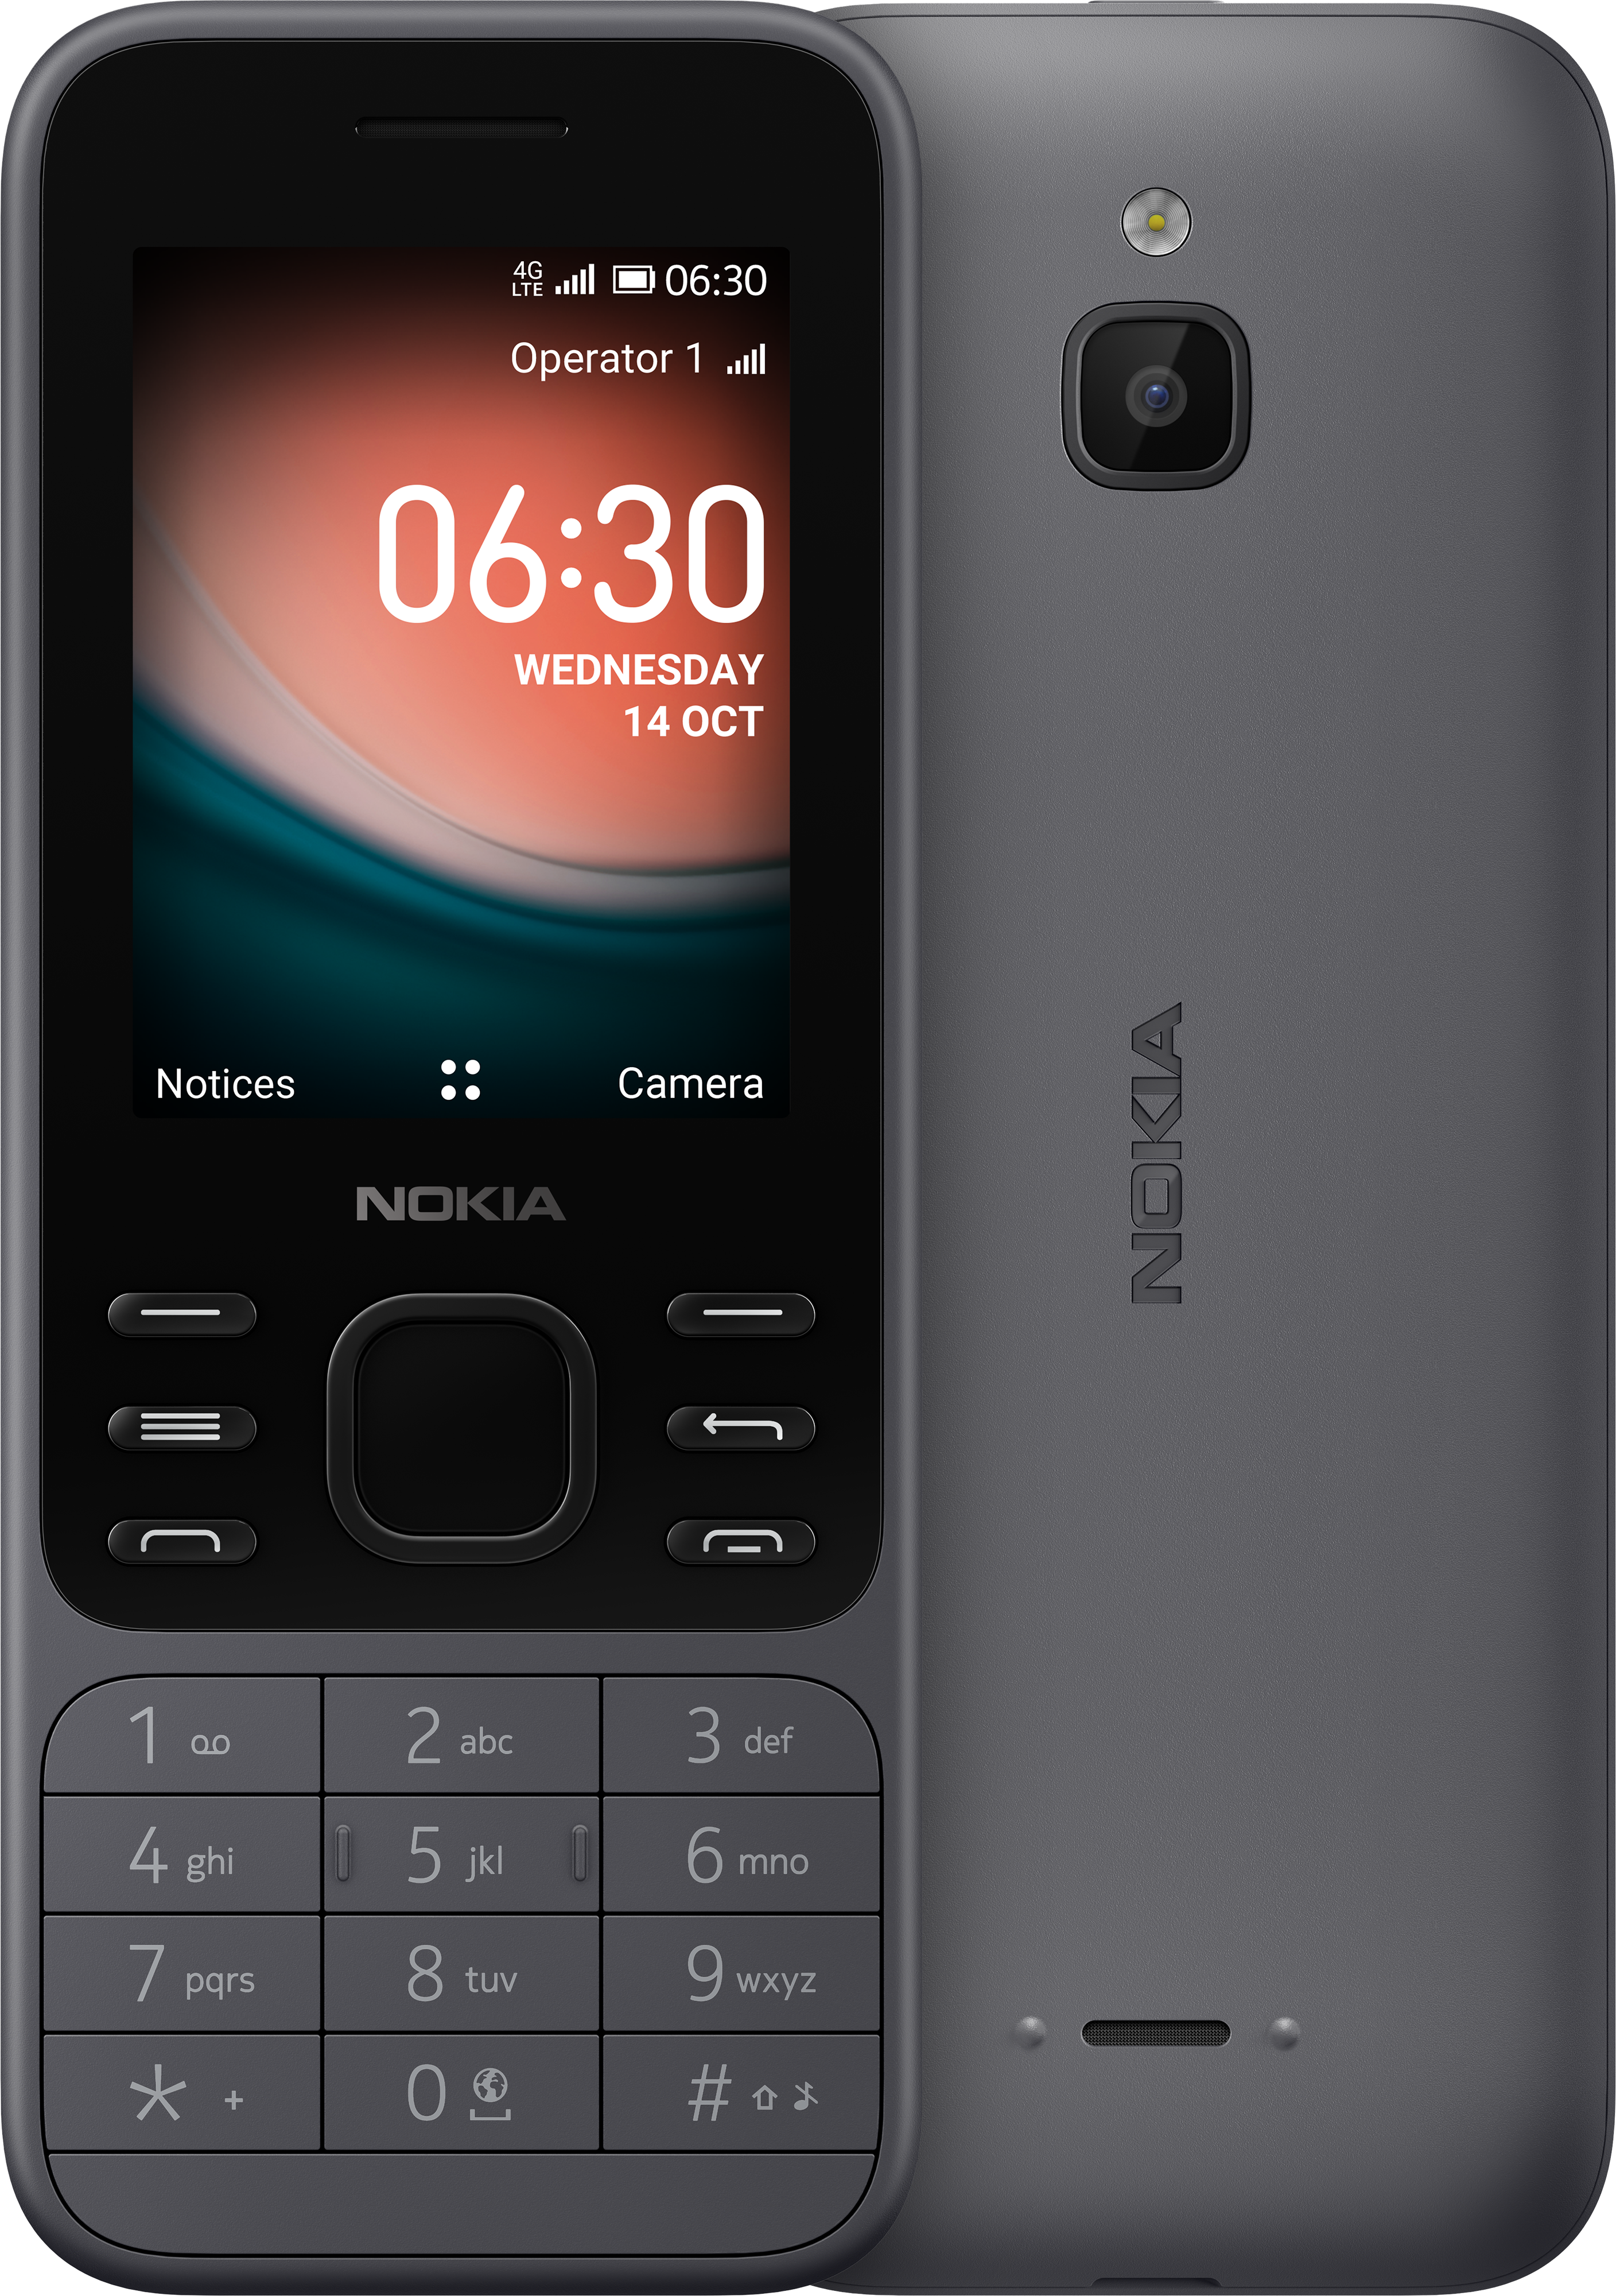 Hãy khám phá ngay bức ảnh liên quan đến Nokia phones and accessories để tìm hiểu về những sản phẩm điện thoại chất lượng cao cùng những phụ kiện tuyệt vời để bảo vệ thiết bị của bạn!